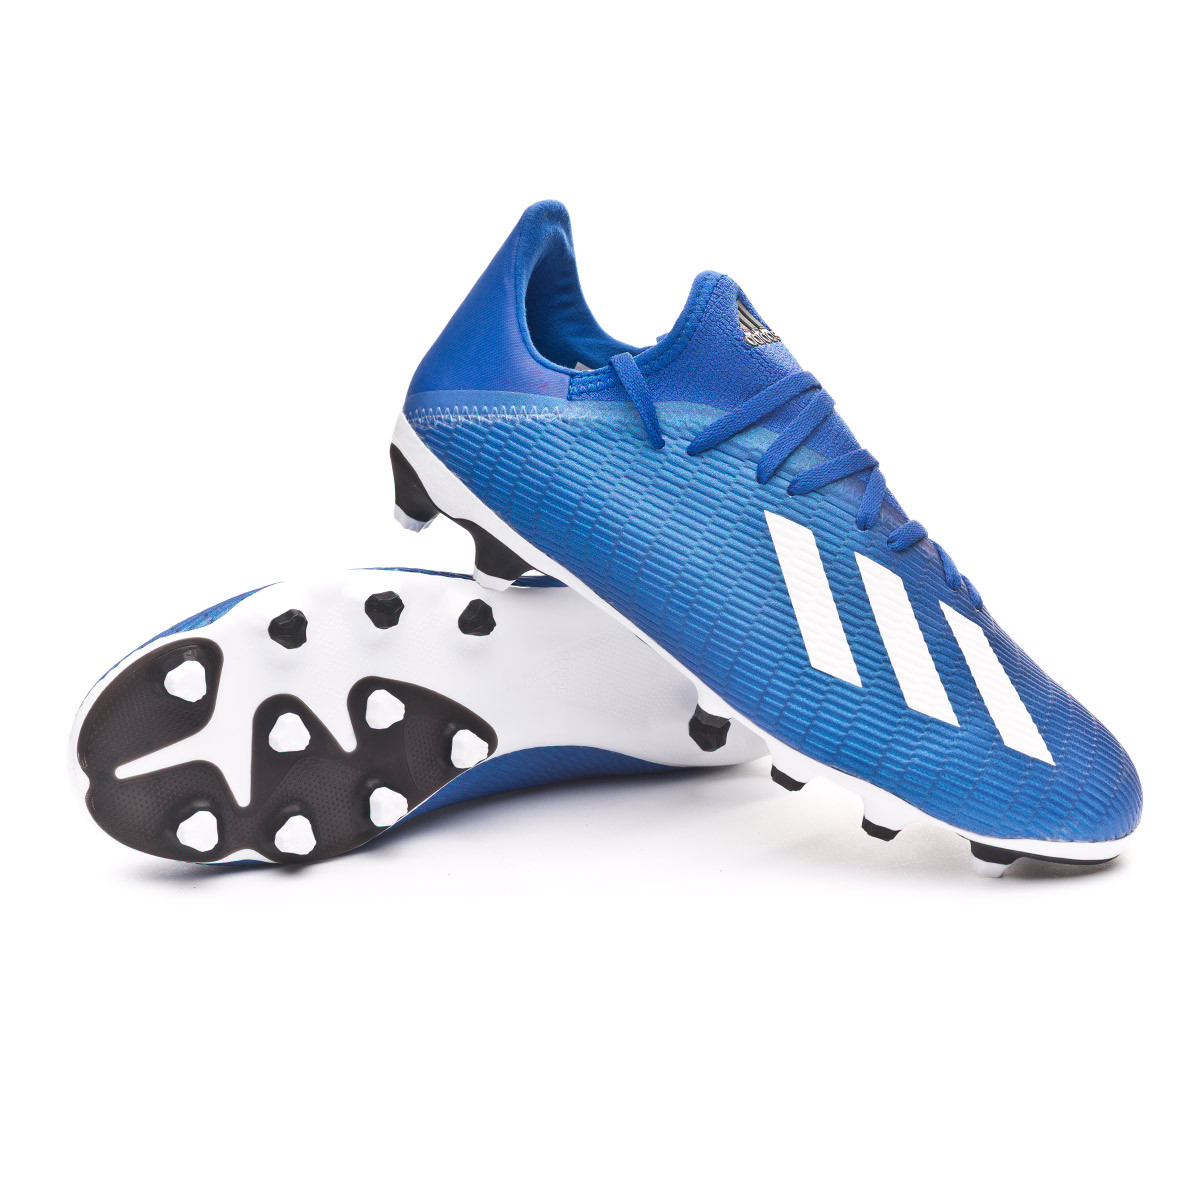 Football Boots adidas X 19.3 MG Team 